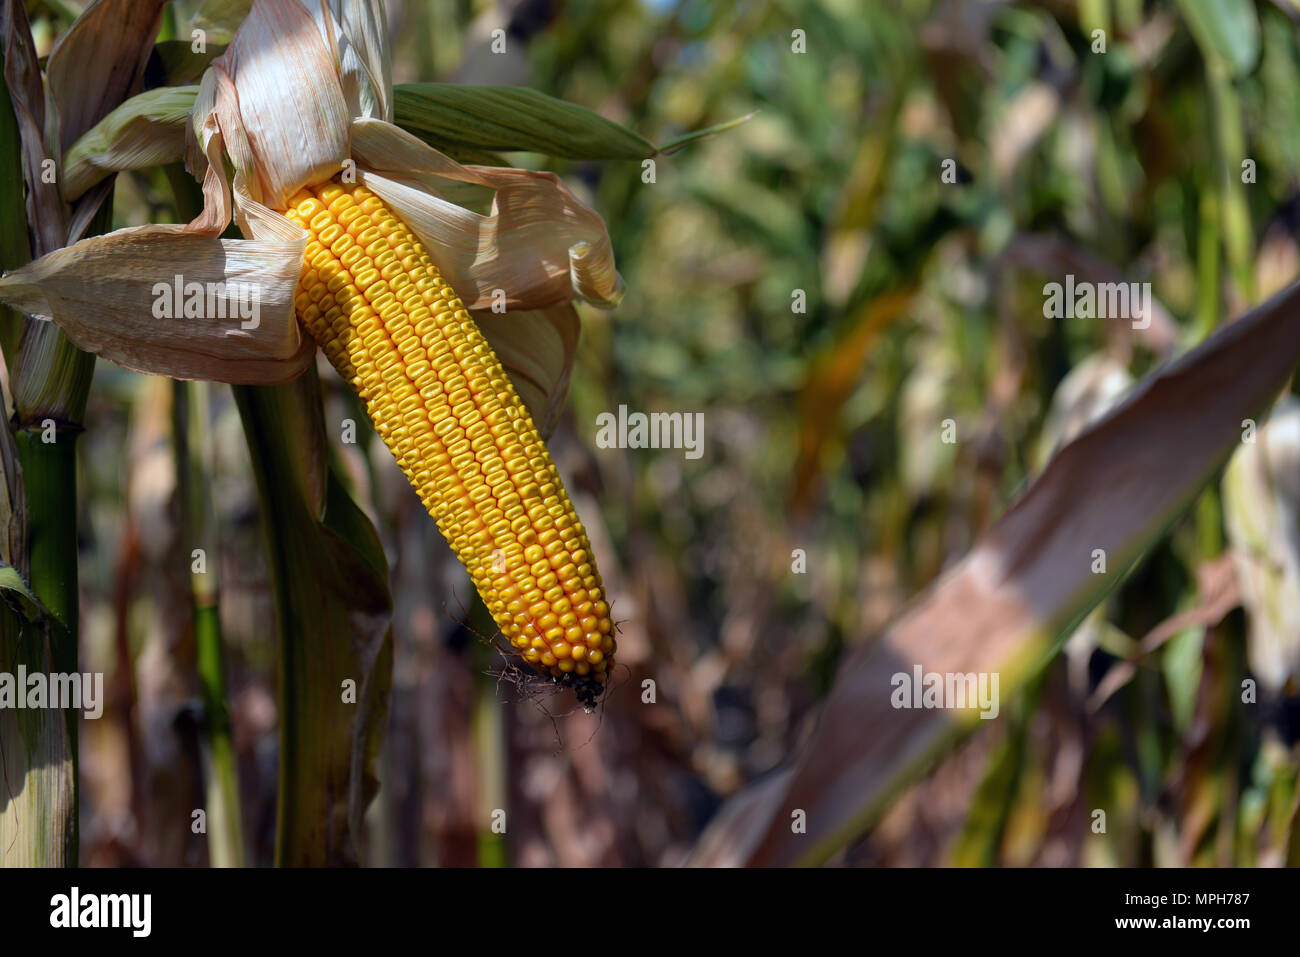 ripe corn in the field Stock Photo